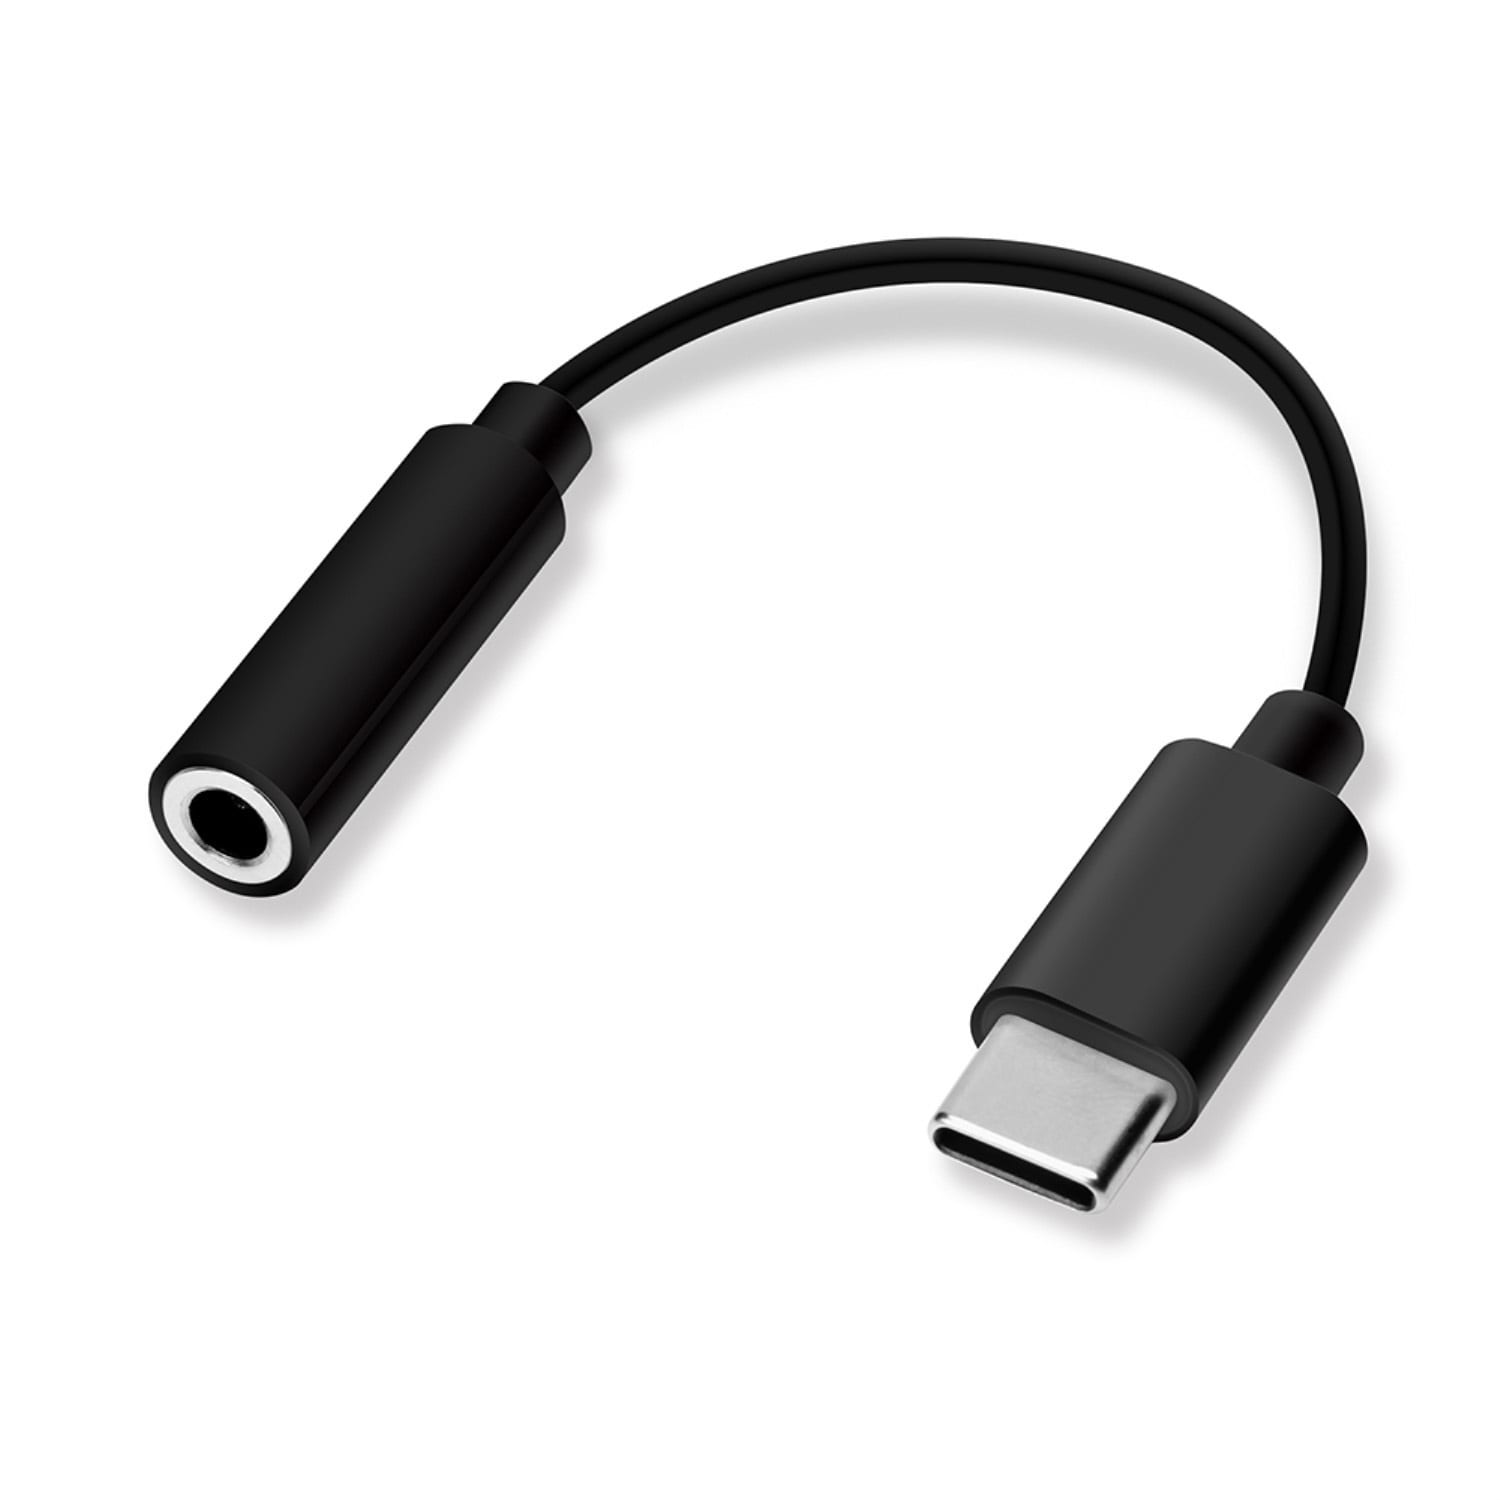 3.5mmイヤホン変換アダプタ for USB Type-C ブラック色 ケーブル長5cm PG-35CCN01BK